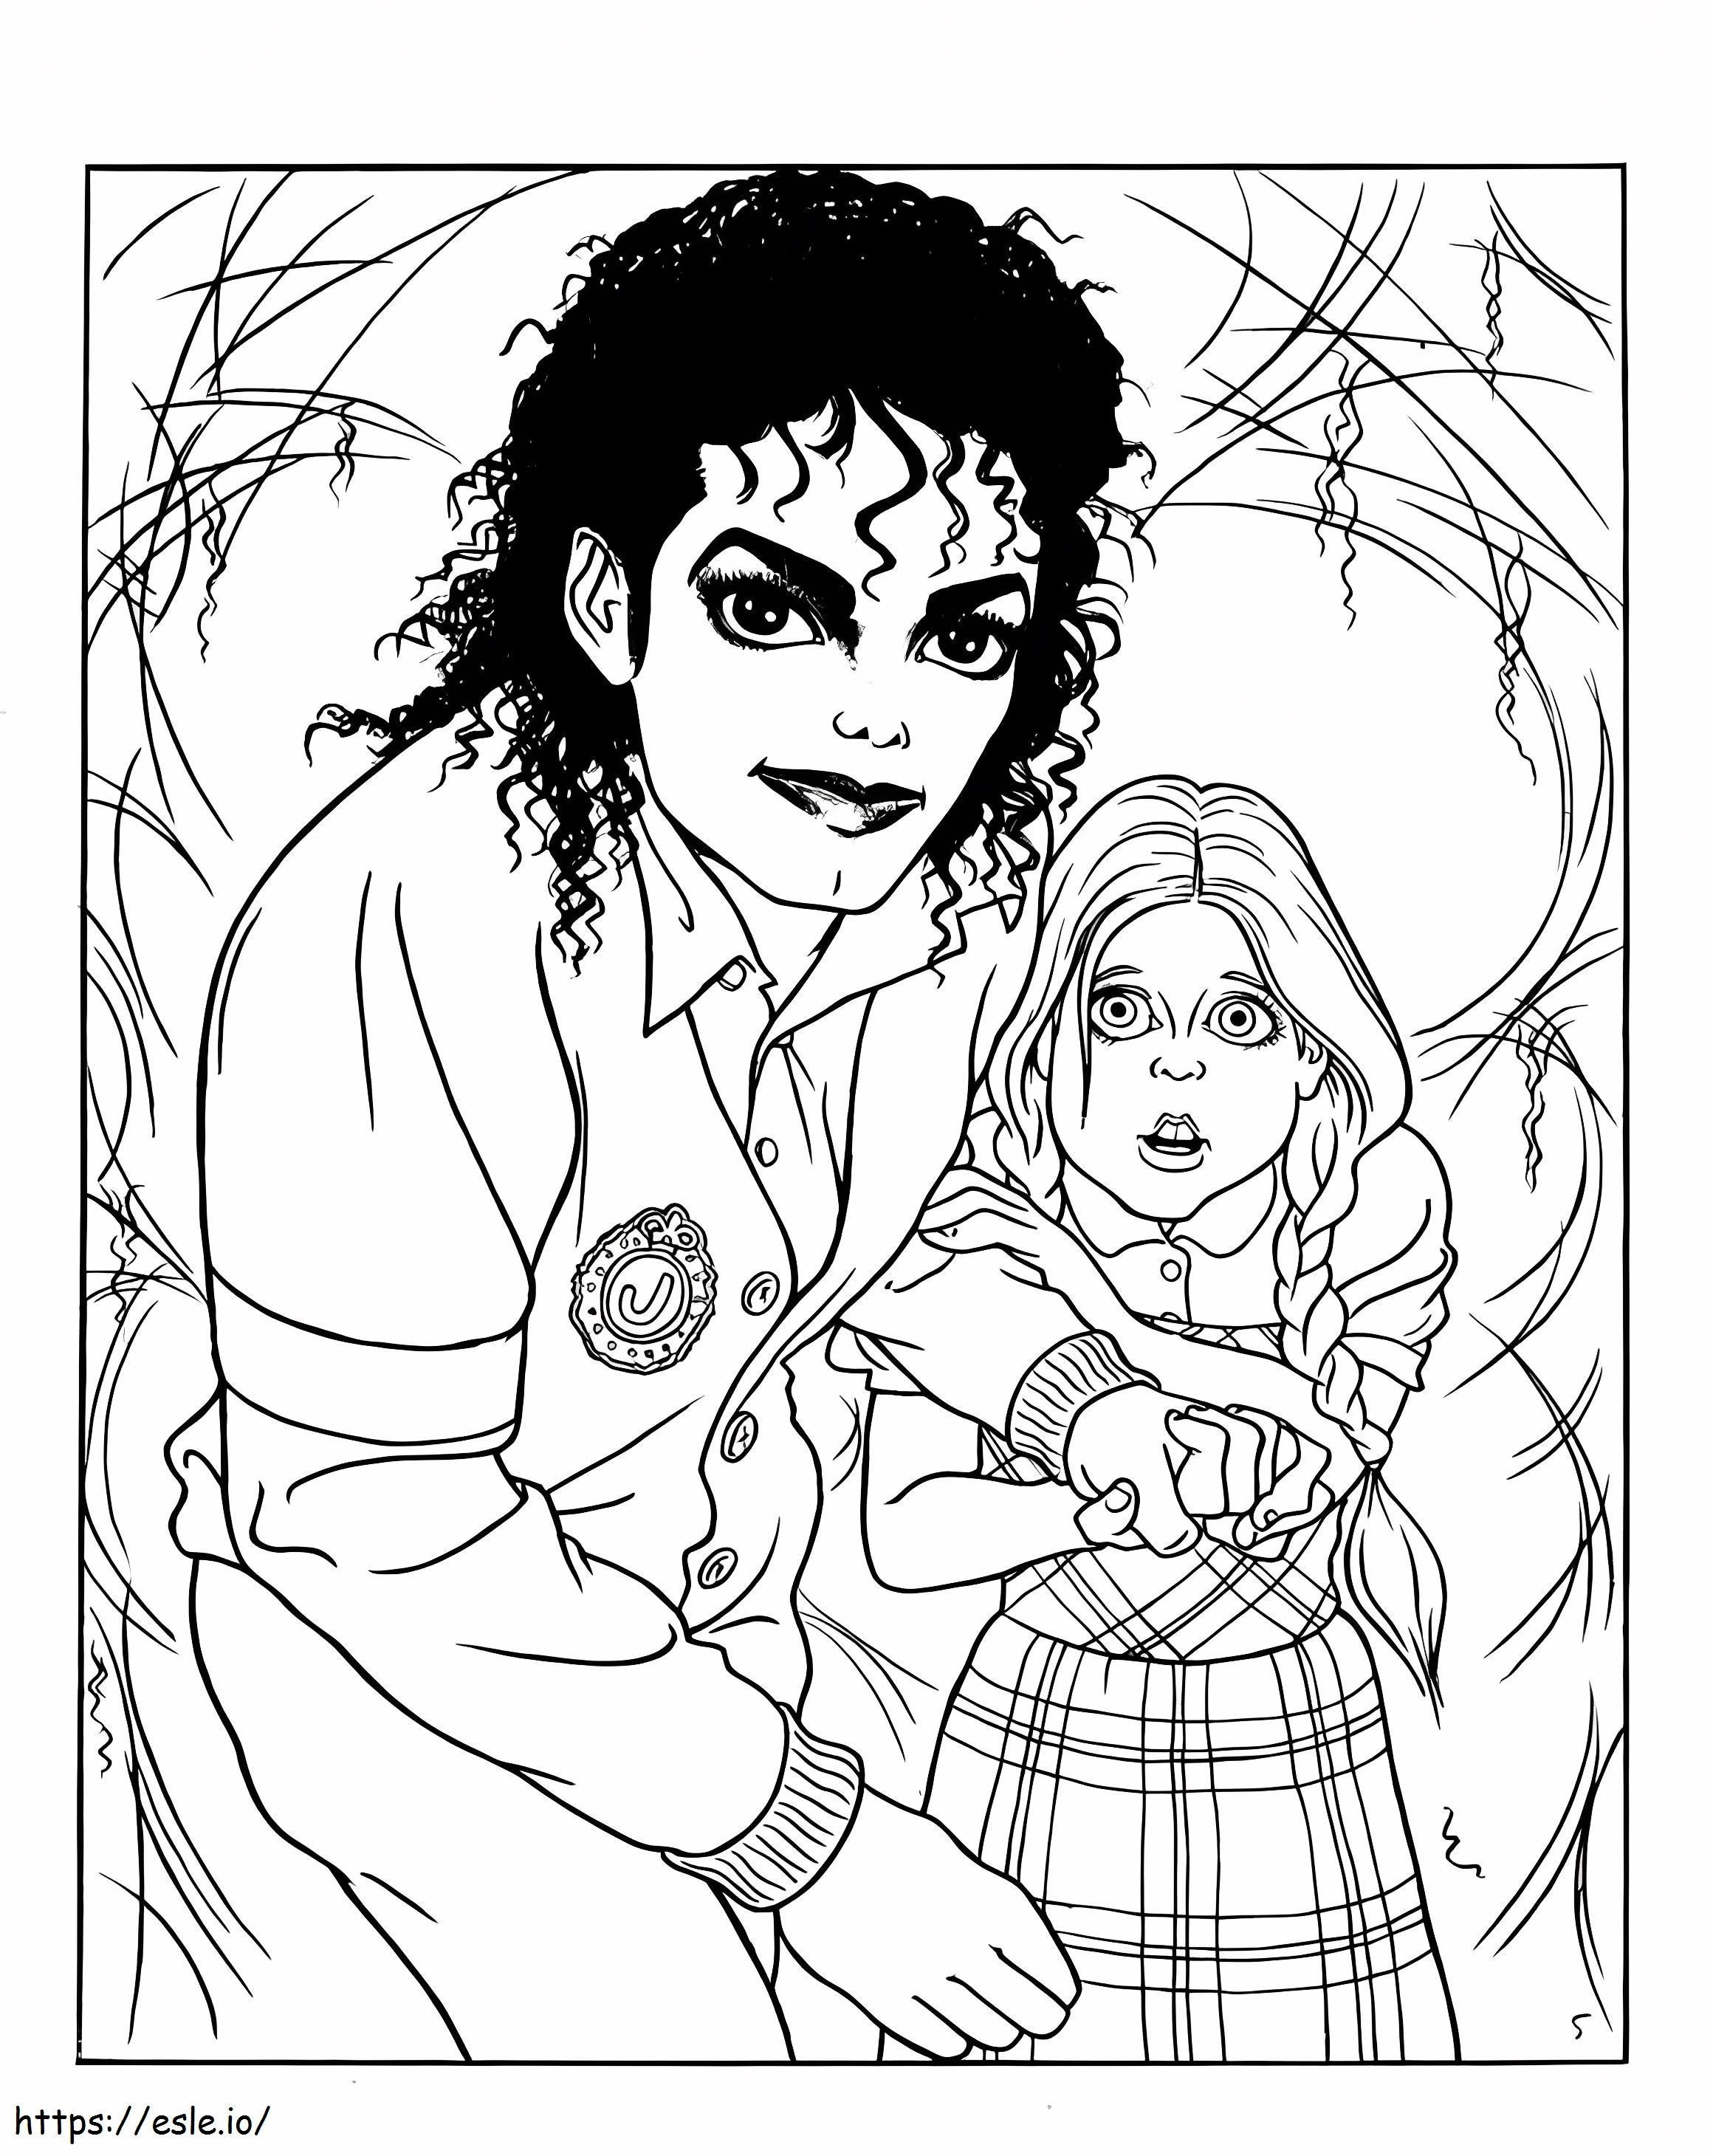 Michael Jackson și băiețelul de colorat